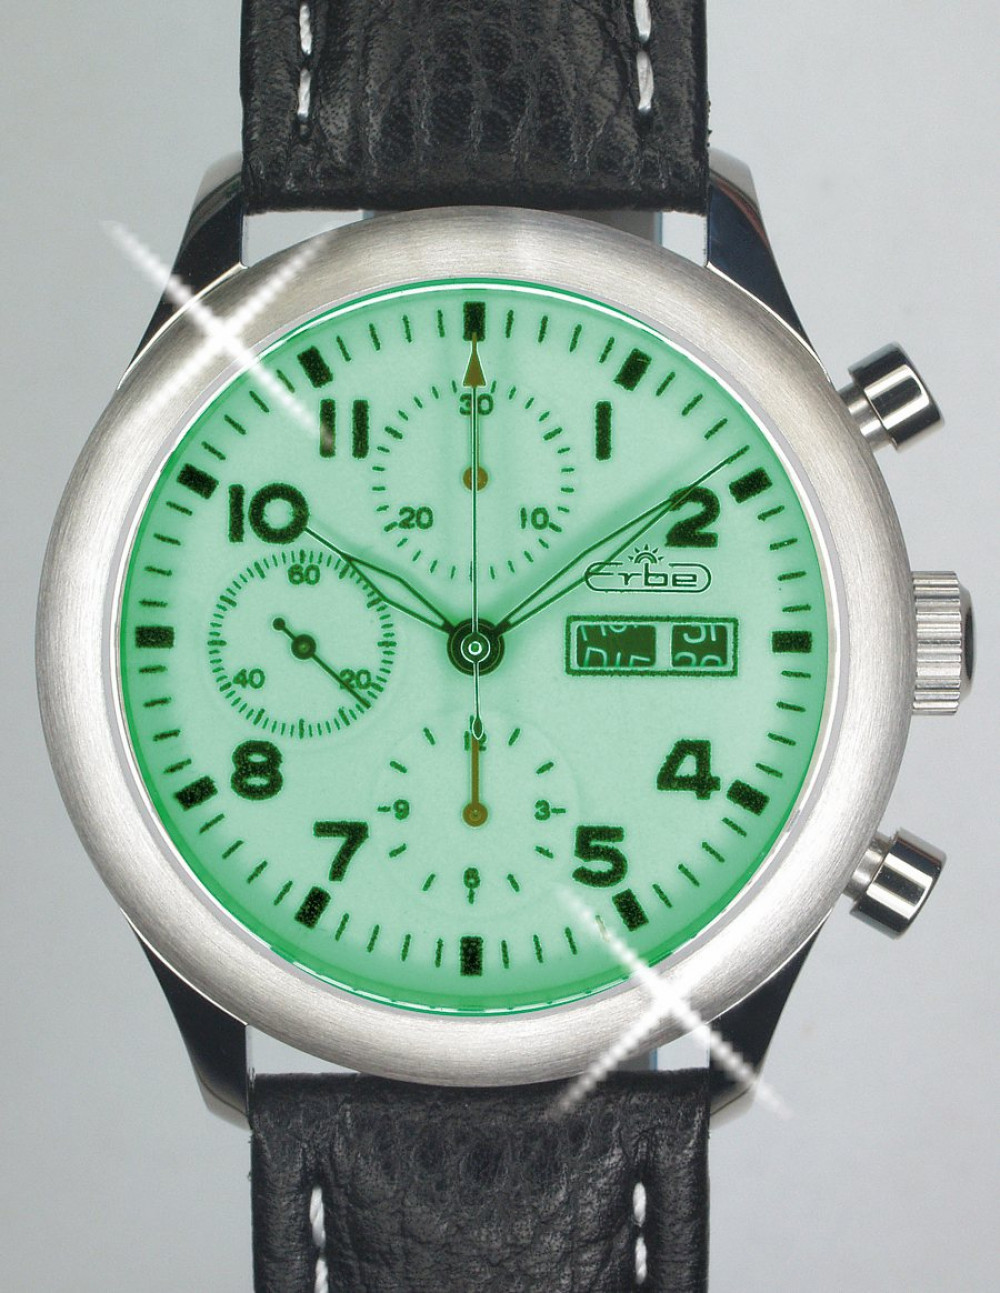 Zegarek firmy Erbe, model Chronograph 860